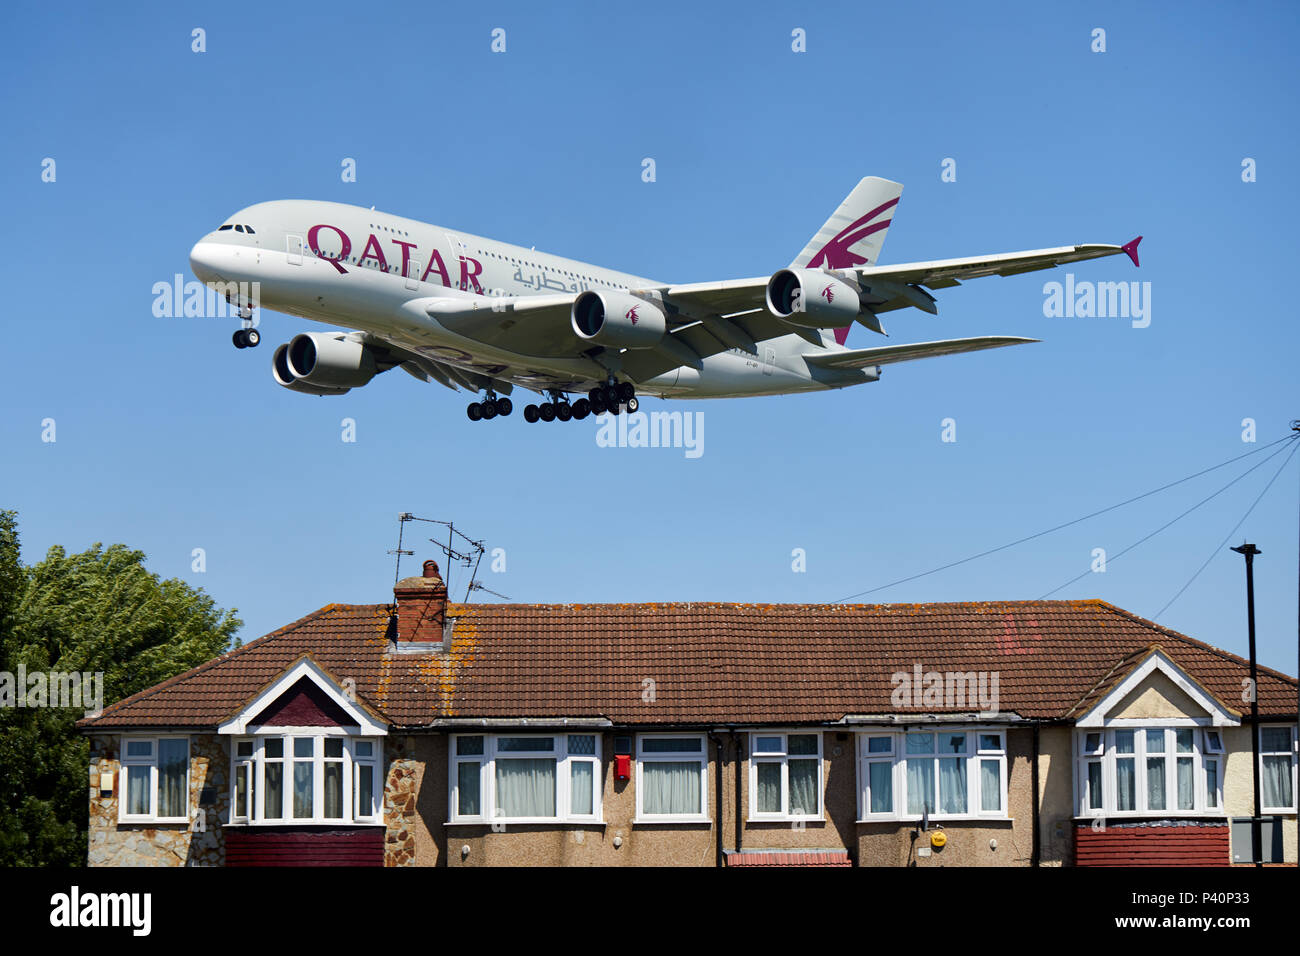 La Qatar Airways Airbus A380-800 aeromobili, numero di registrazione A7-API, volando a bassa quota sopra le case come si scende per un atterraggio all' Aeroporto di Heathrow di Londra. Foto Stock